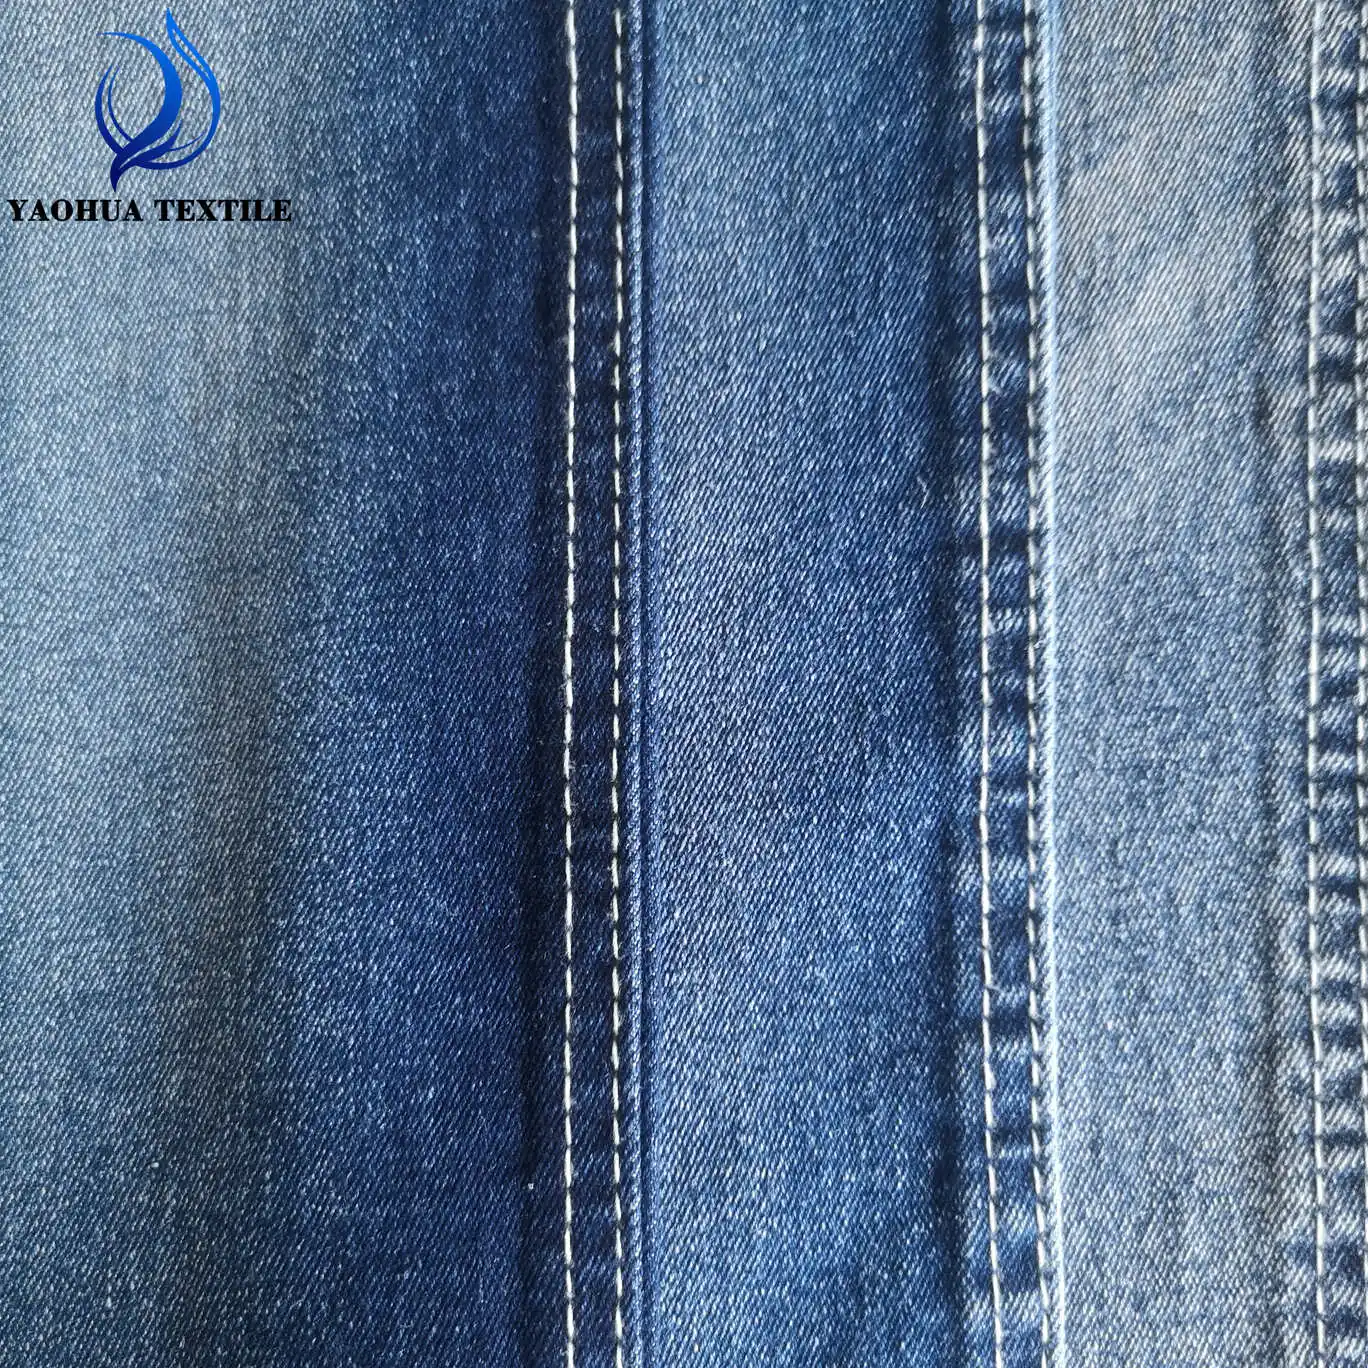 1016 prezzo all'ingrosso a buon mercato TR cotone/poliestere/viscosa/spandex tessuto denim tessuto per jeans